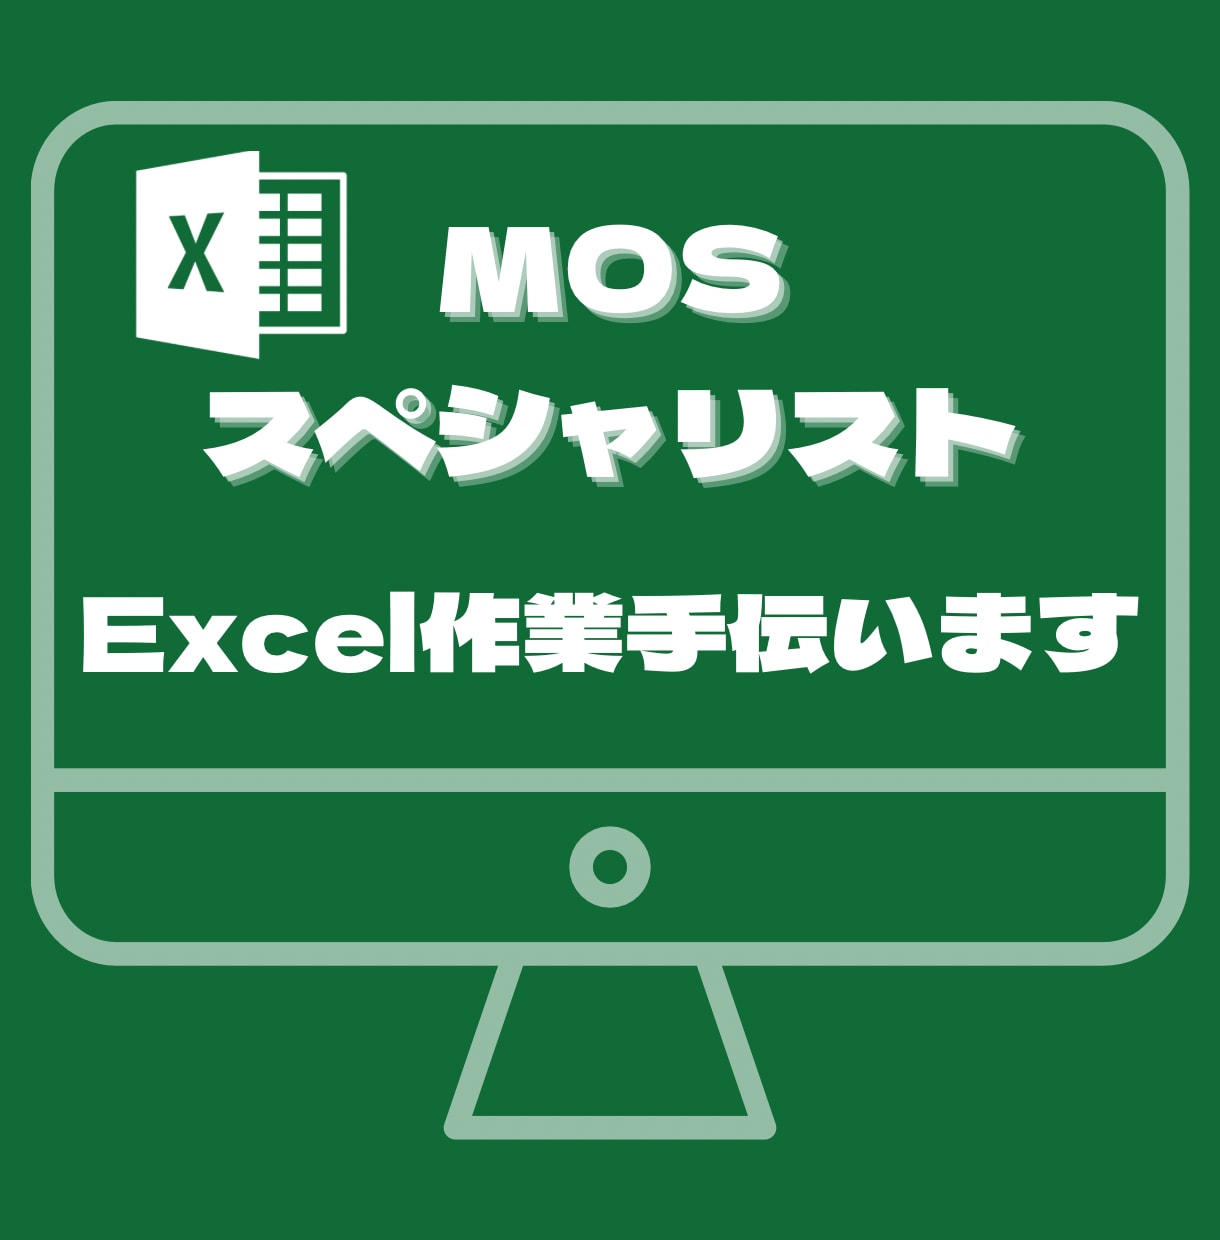 Excel簡単に集計にしたいなど相談のります mosスペシャリスト保持者がExcel業務サポートします イメージ1